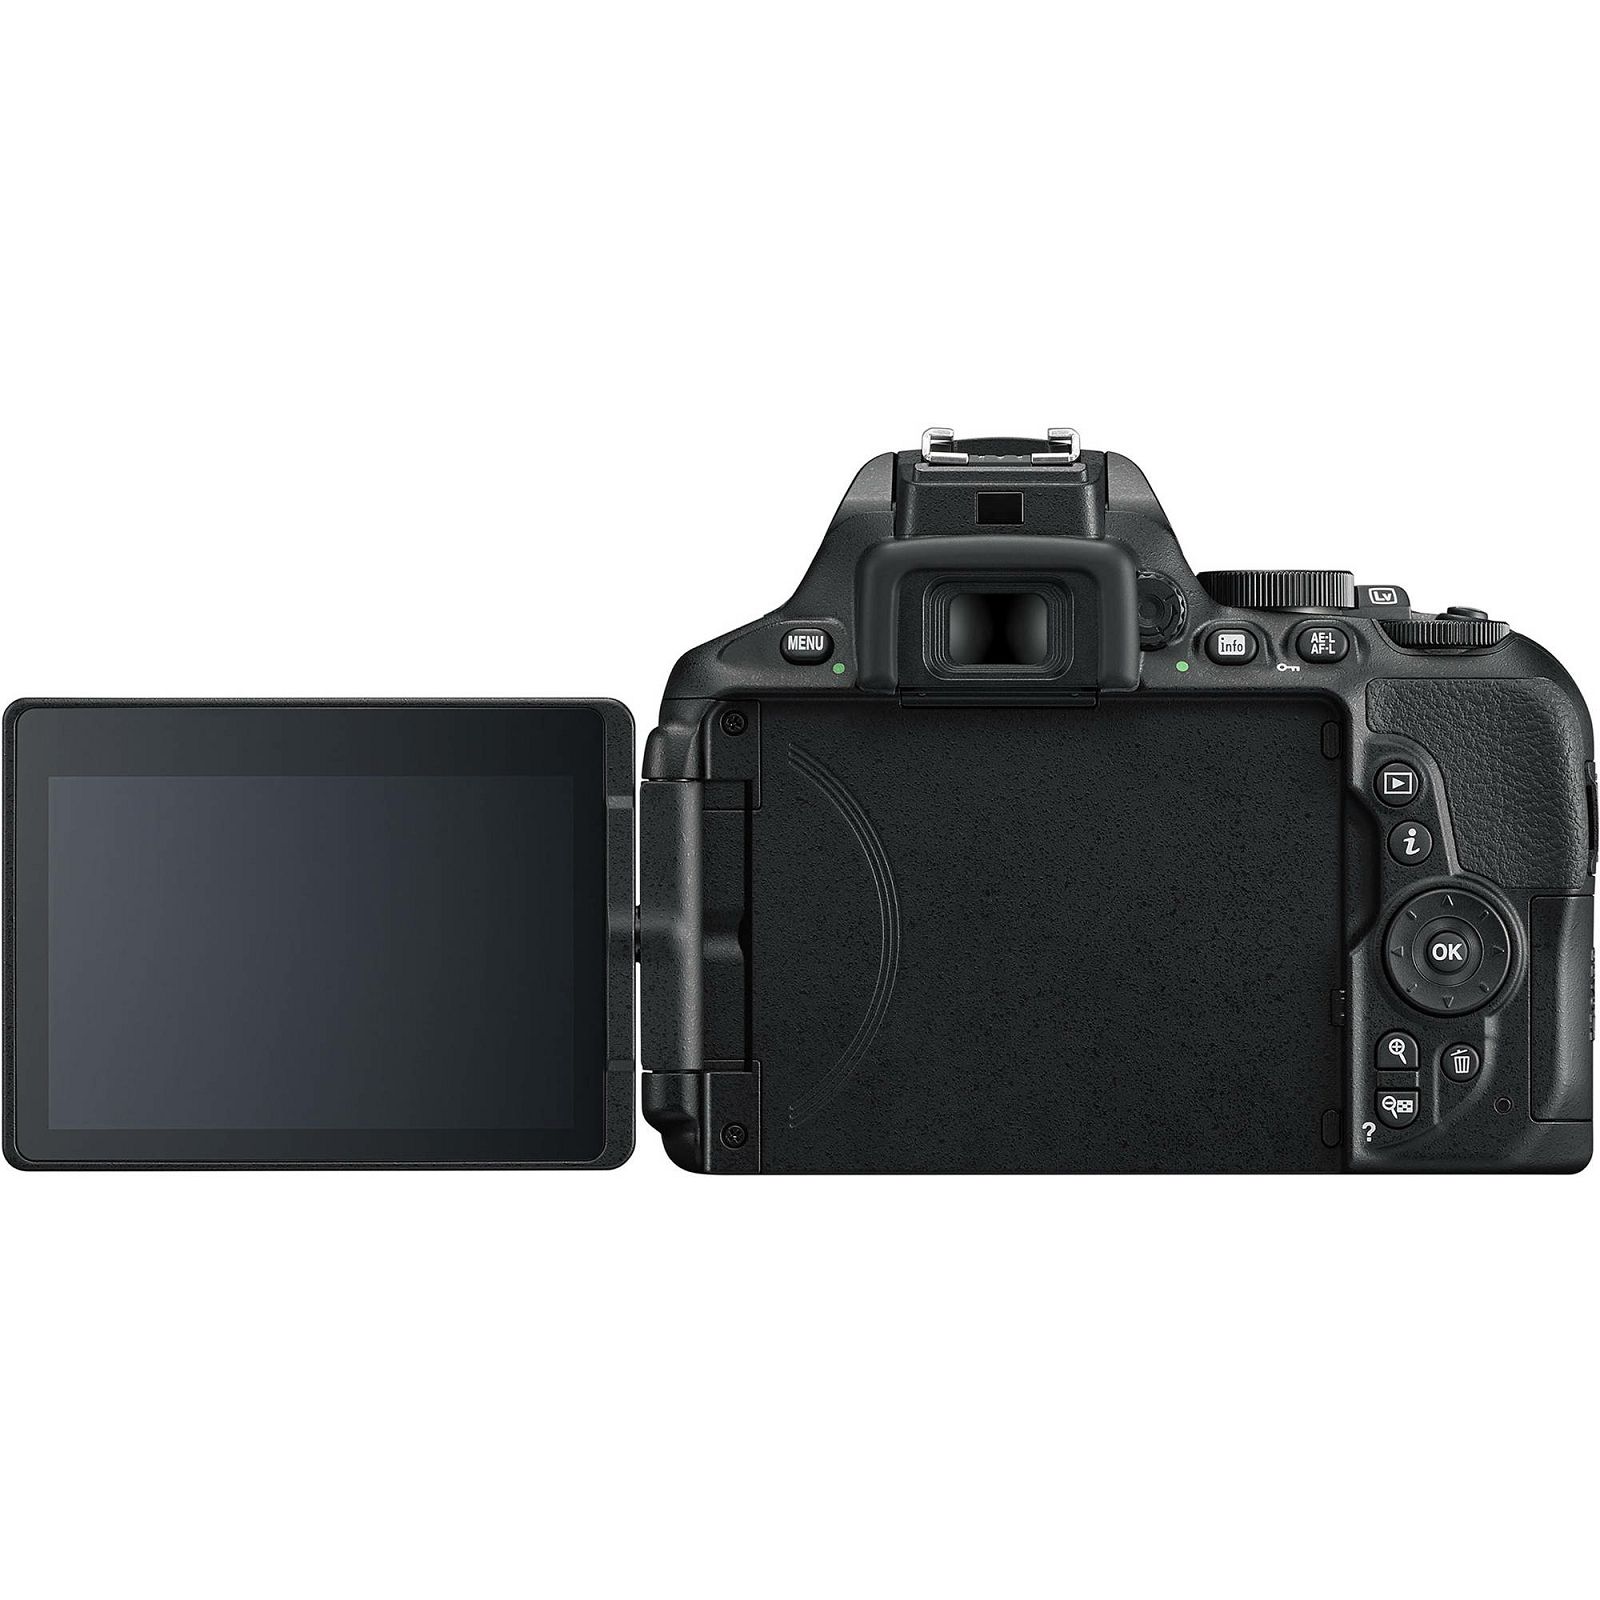 Nikon D5600 + AF-P 18-55 VR + AF-S 55-300 VR DX KIT DSLR Digitalni fotoaparat s dva objektiva 18-55mm f/3.5-5.6 i 55-300mm (VBA500K001-2)